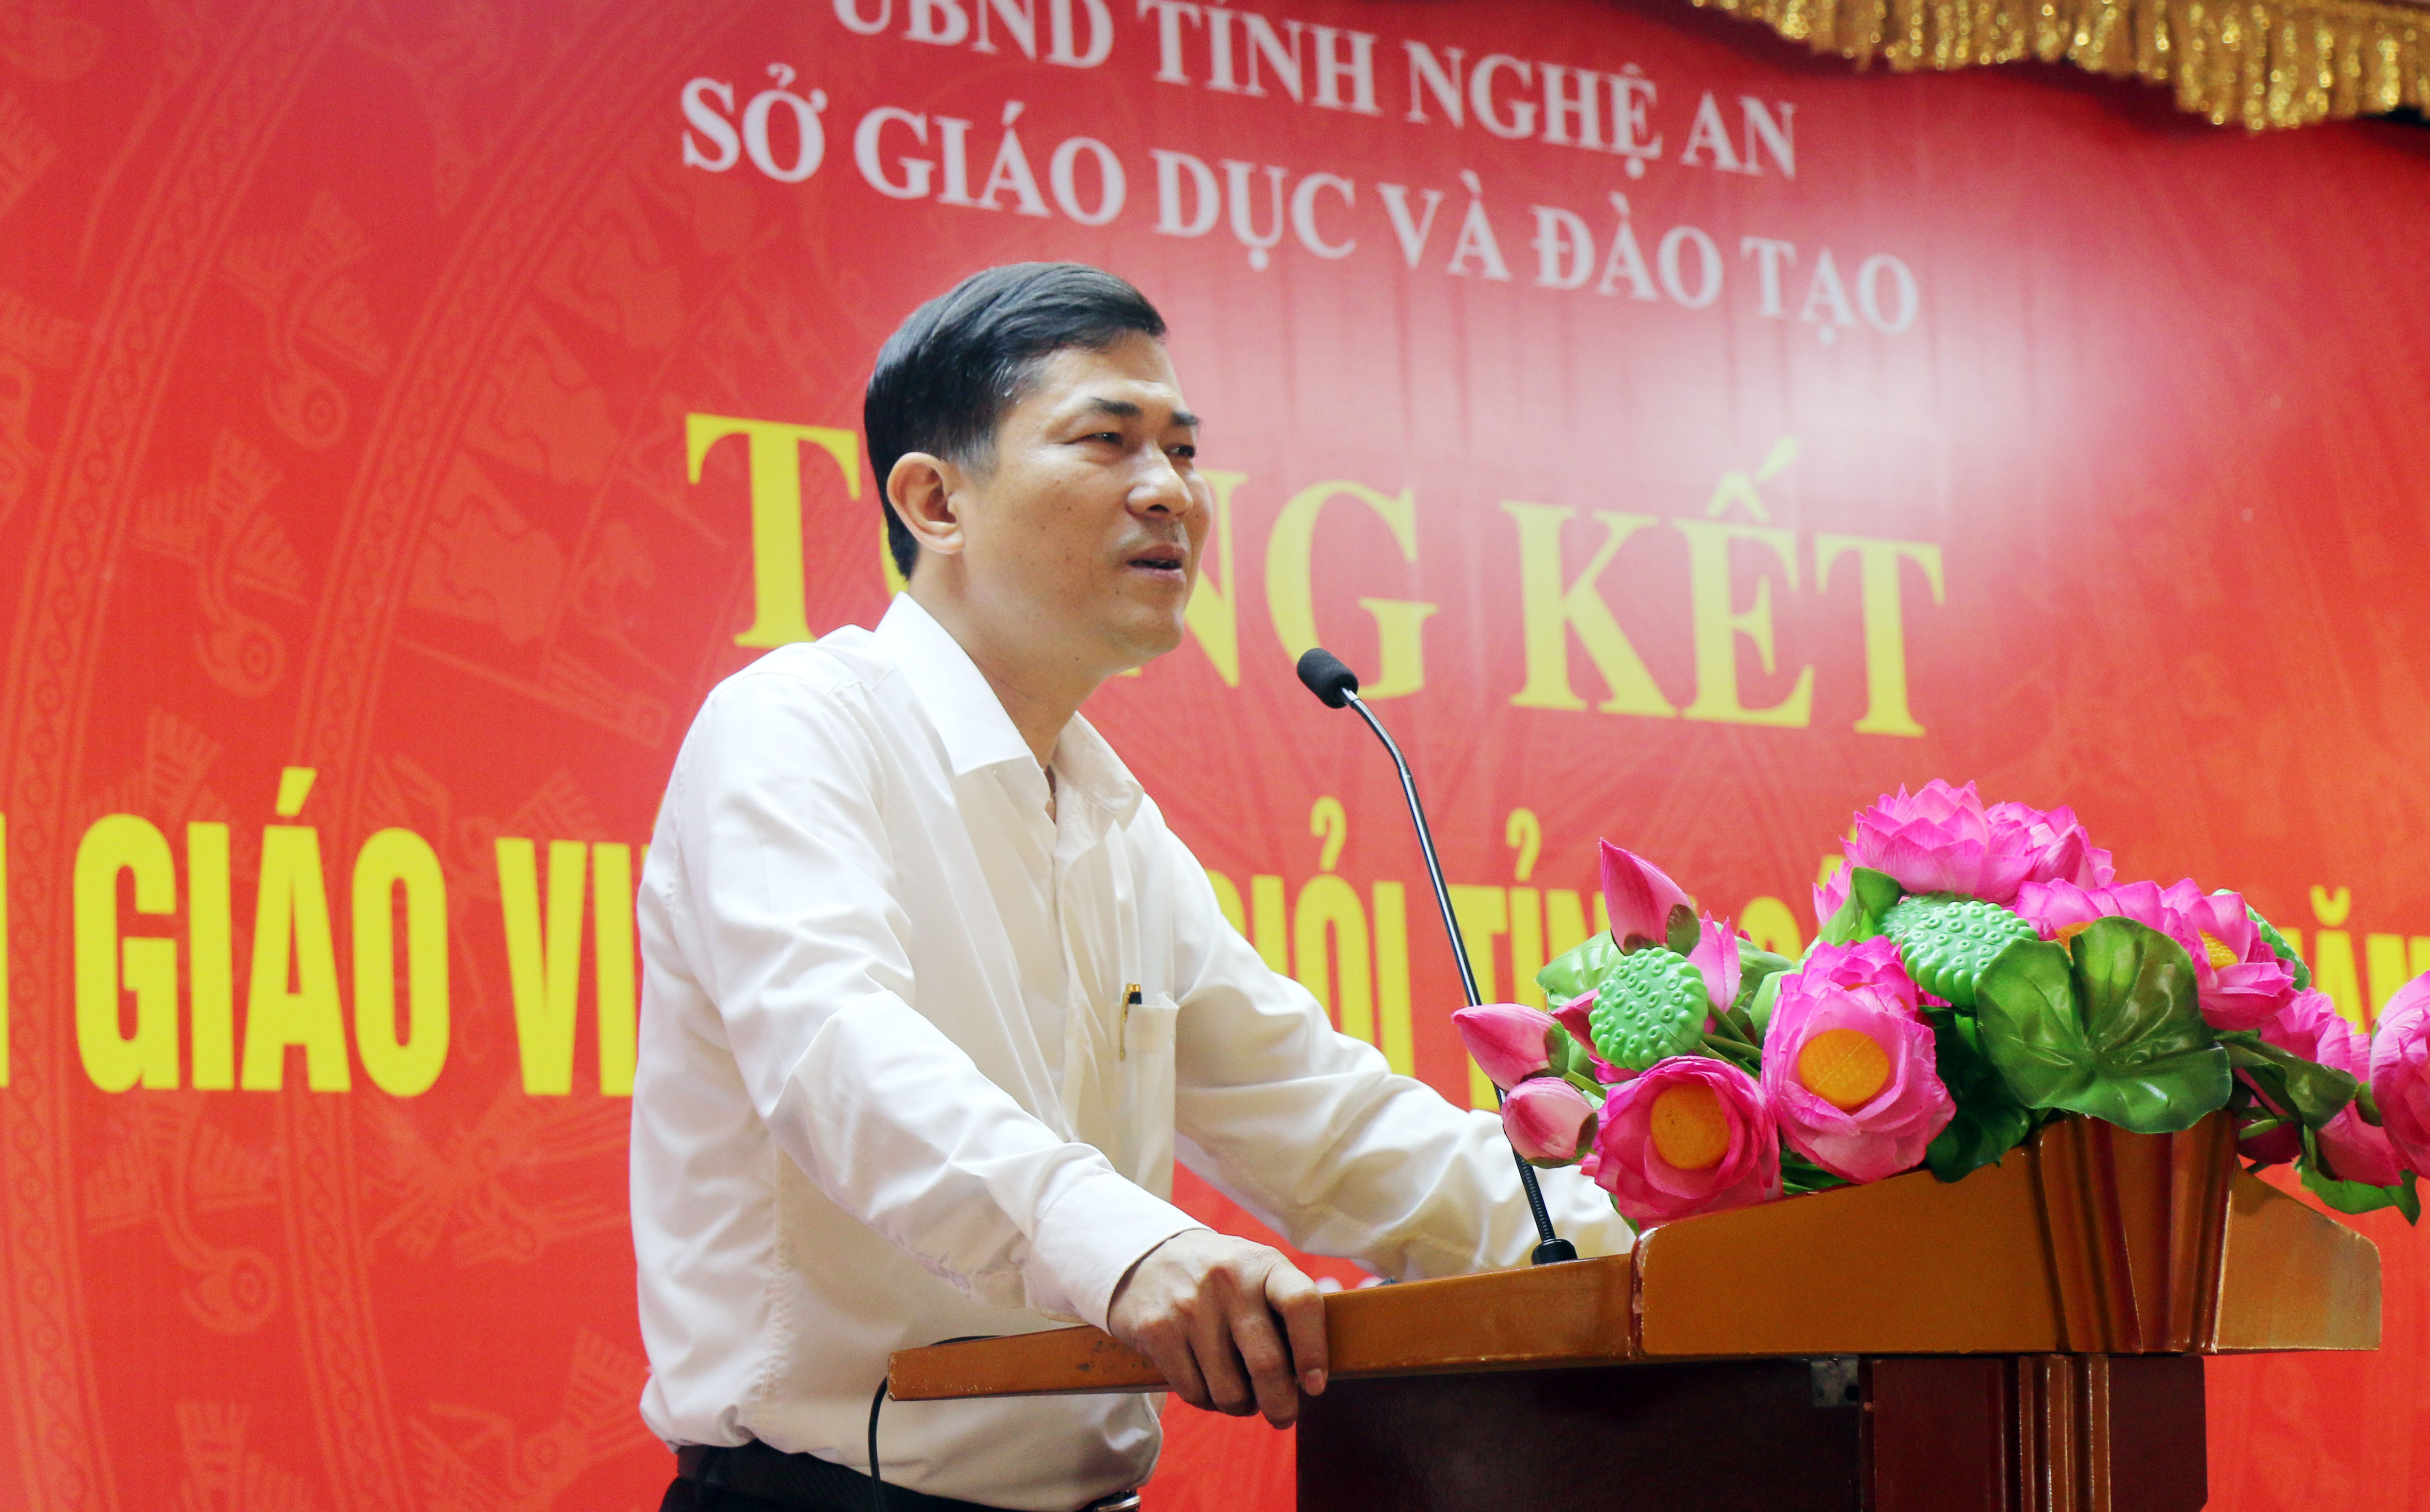 Giám đốc Sở Giáo dục và Đào tạo Thái Văn Thành phát biểu tại cuộc họp. Ảnh: Mỹ Hà